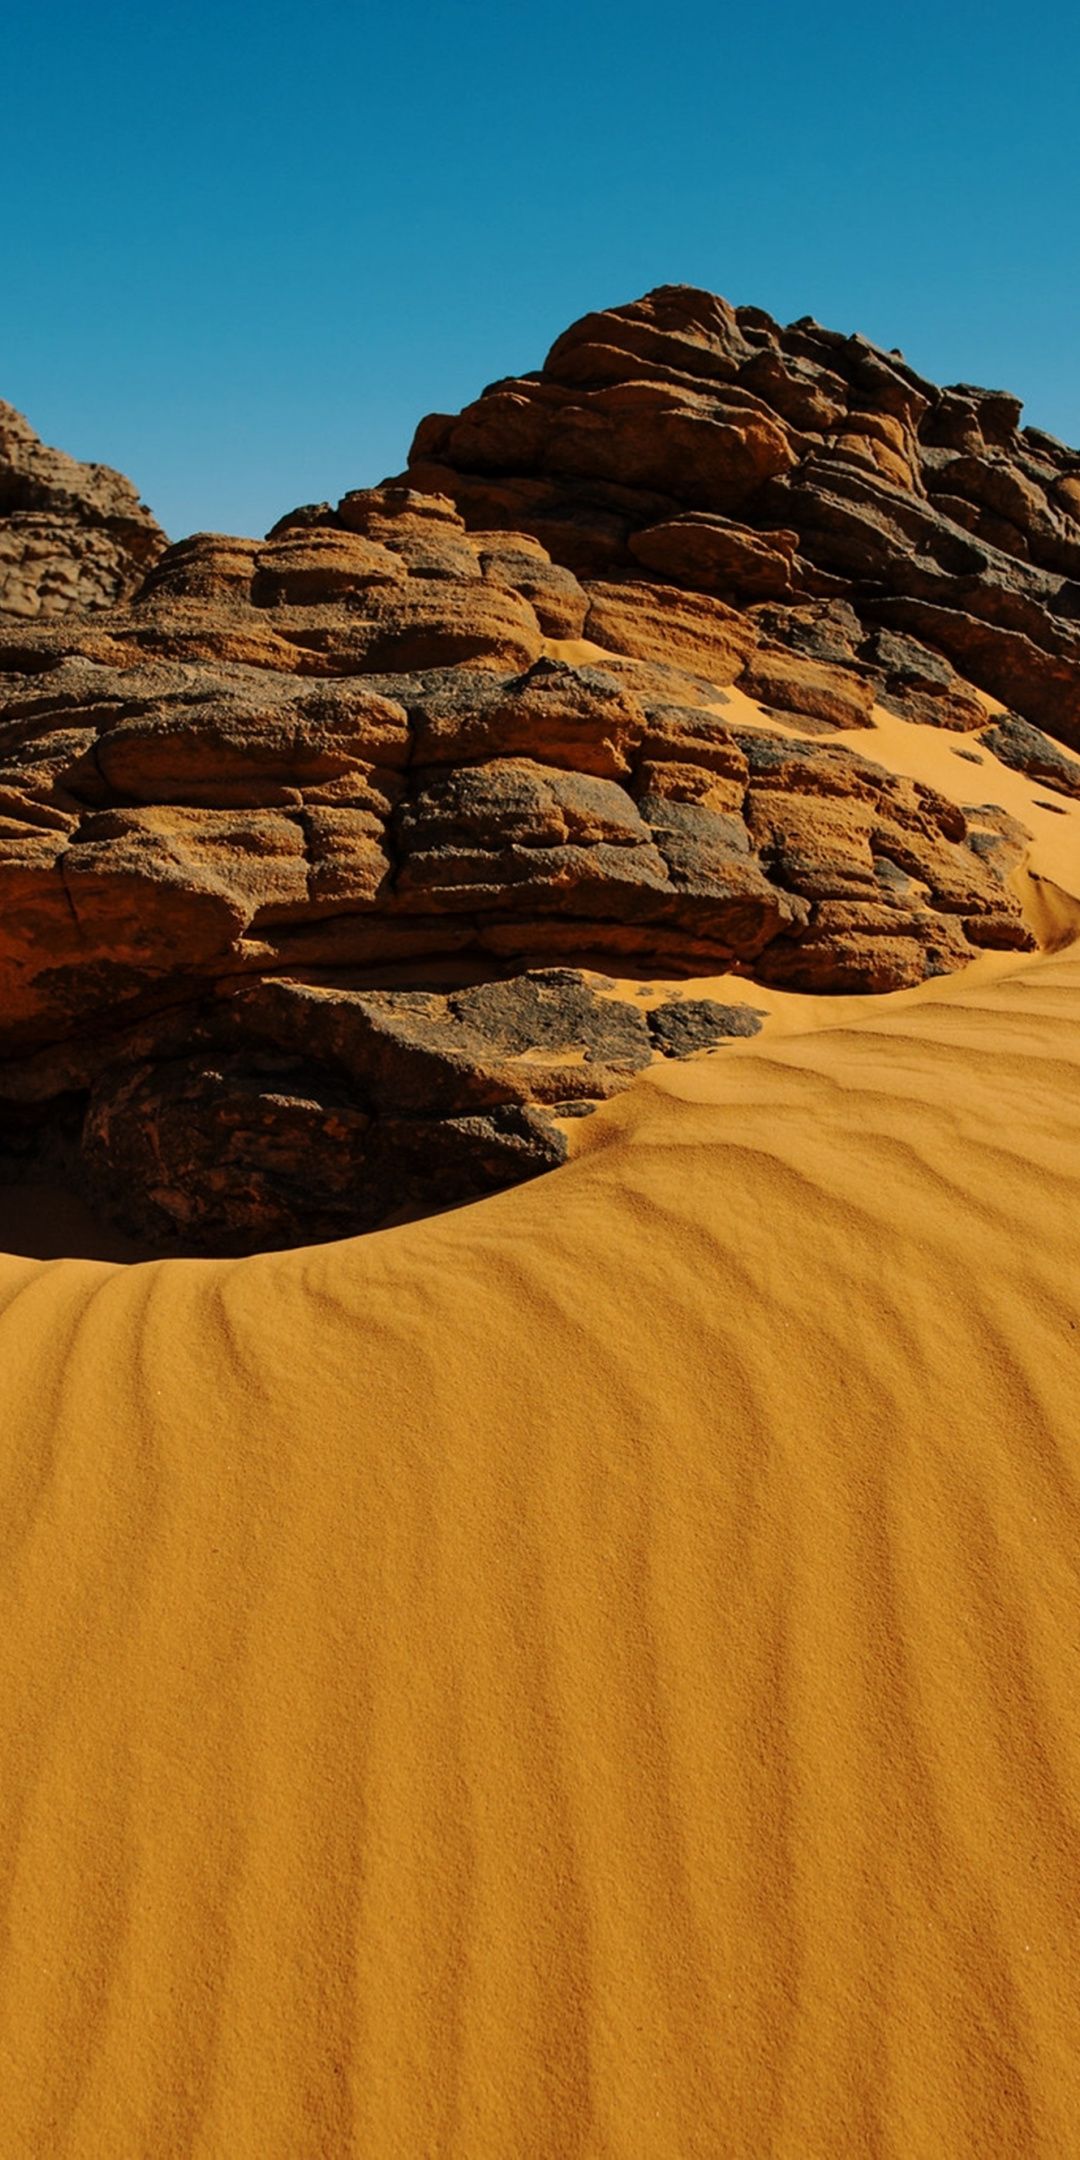 Algeria Desert, Rocks, Sand, Dunes Wallpaper - Erg , HD Wallpaper & Backgrounds